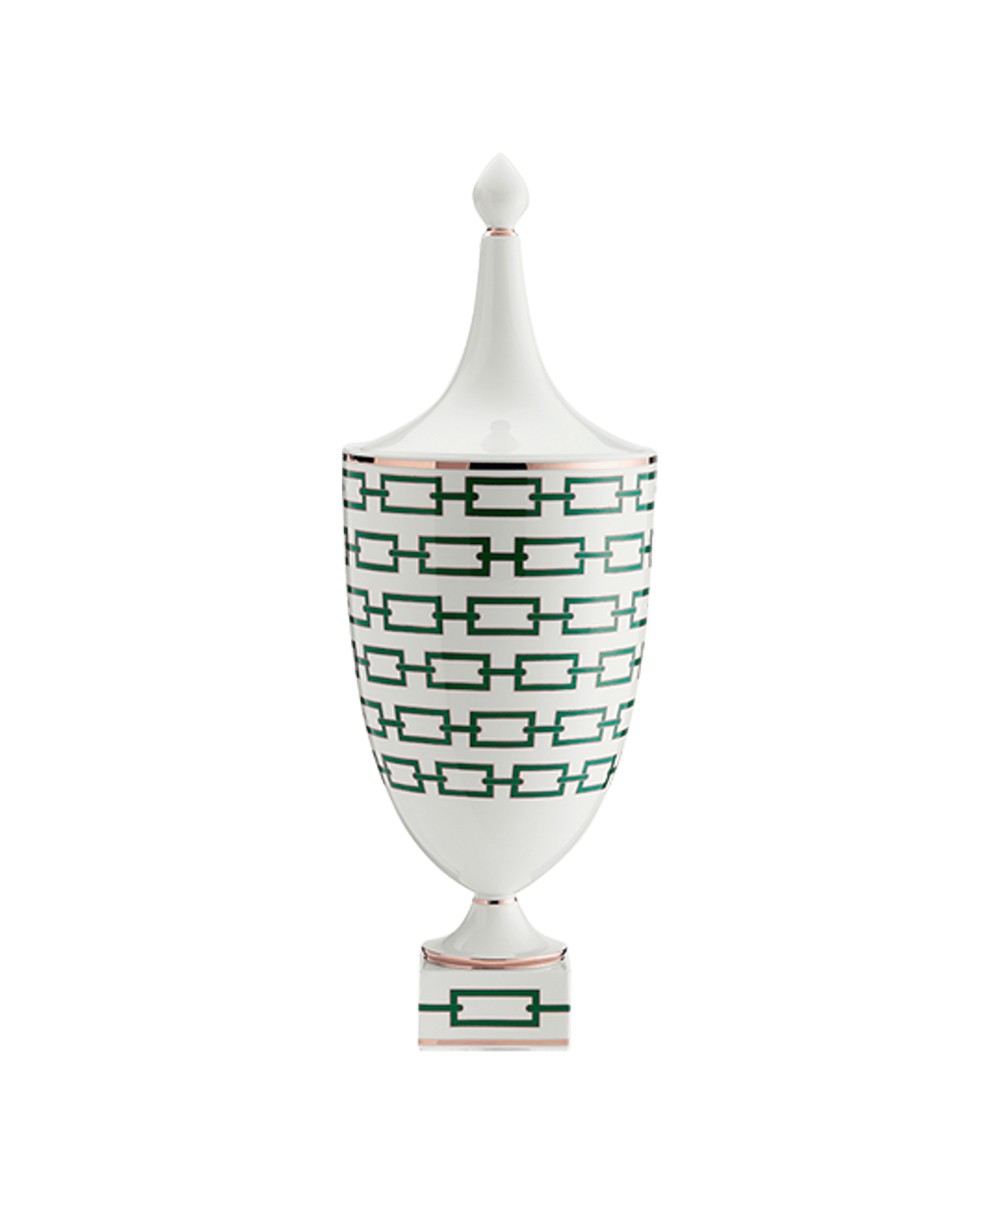 Produktbild der "Catene Vase" von Ginori 1735 im RAUM Concept store